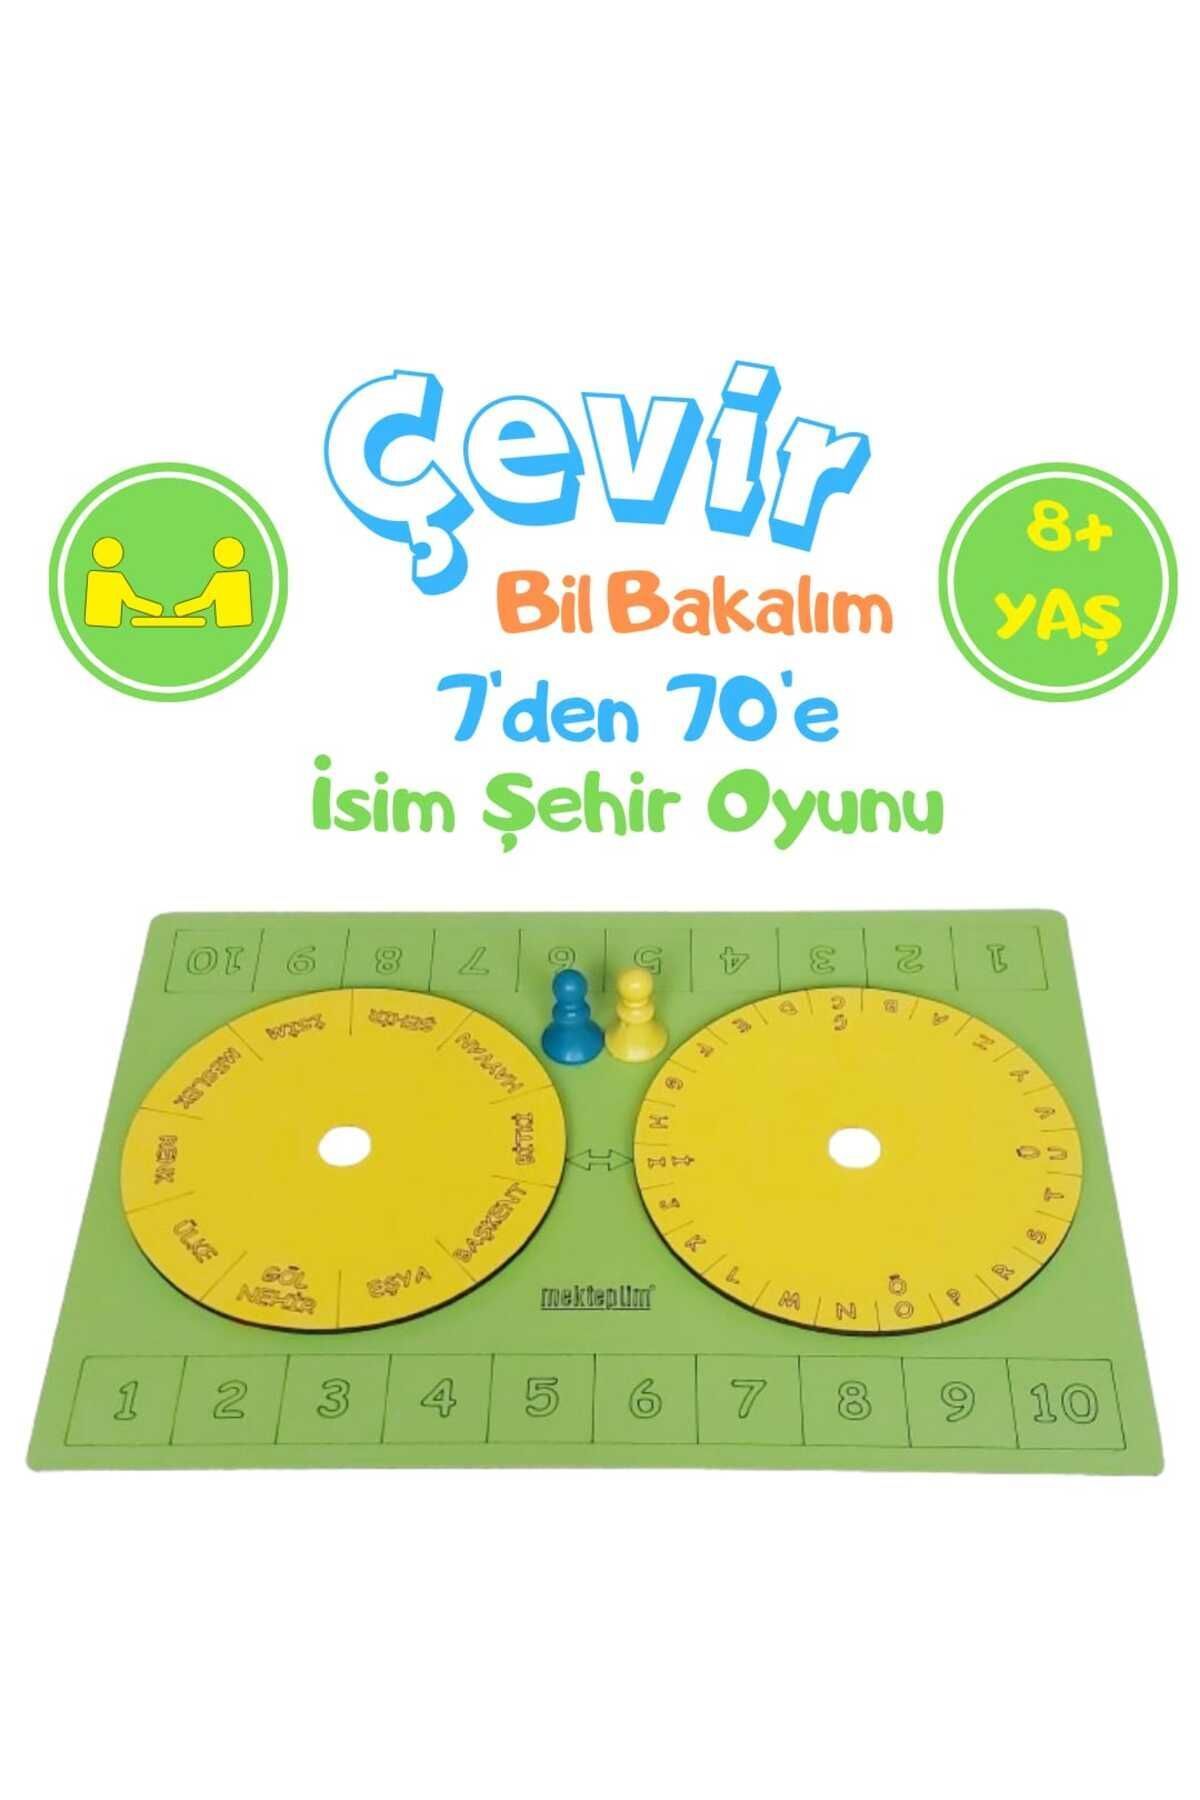 mekteplim Çevir Bil Bakalım 7'den 70'e isim Şehir Oyunu Yeşil